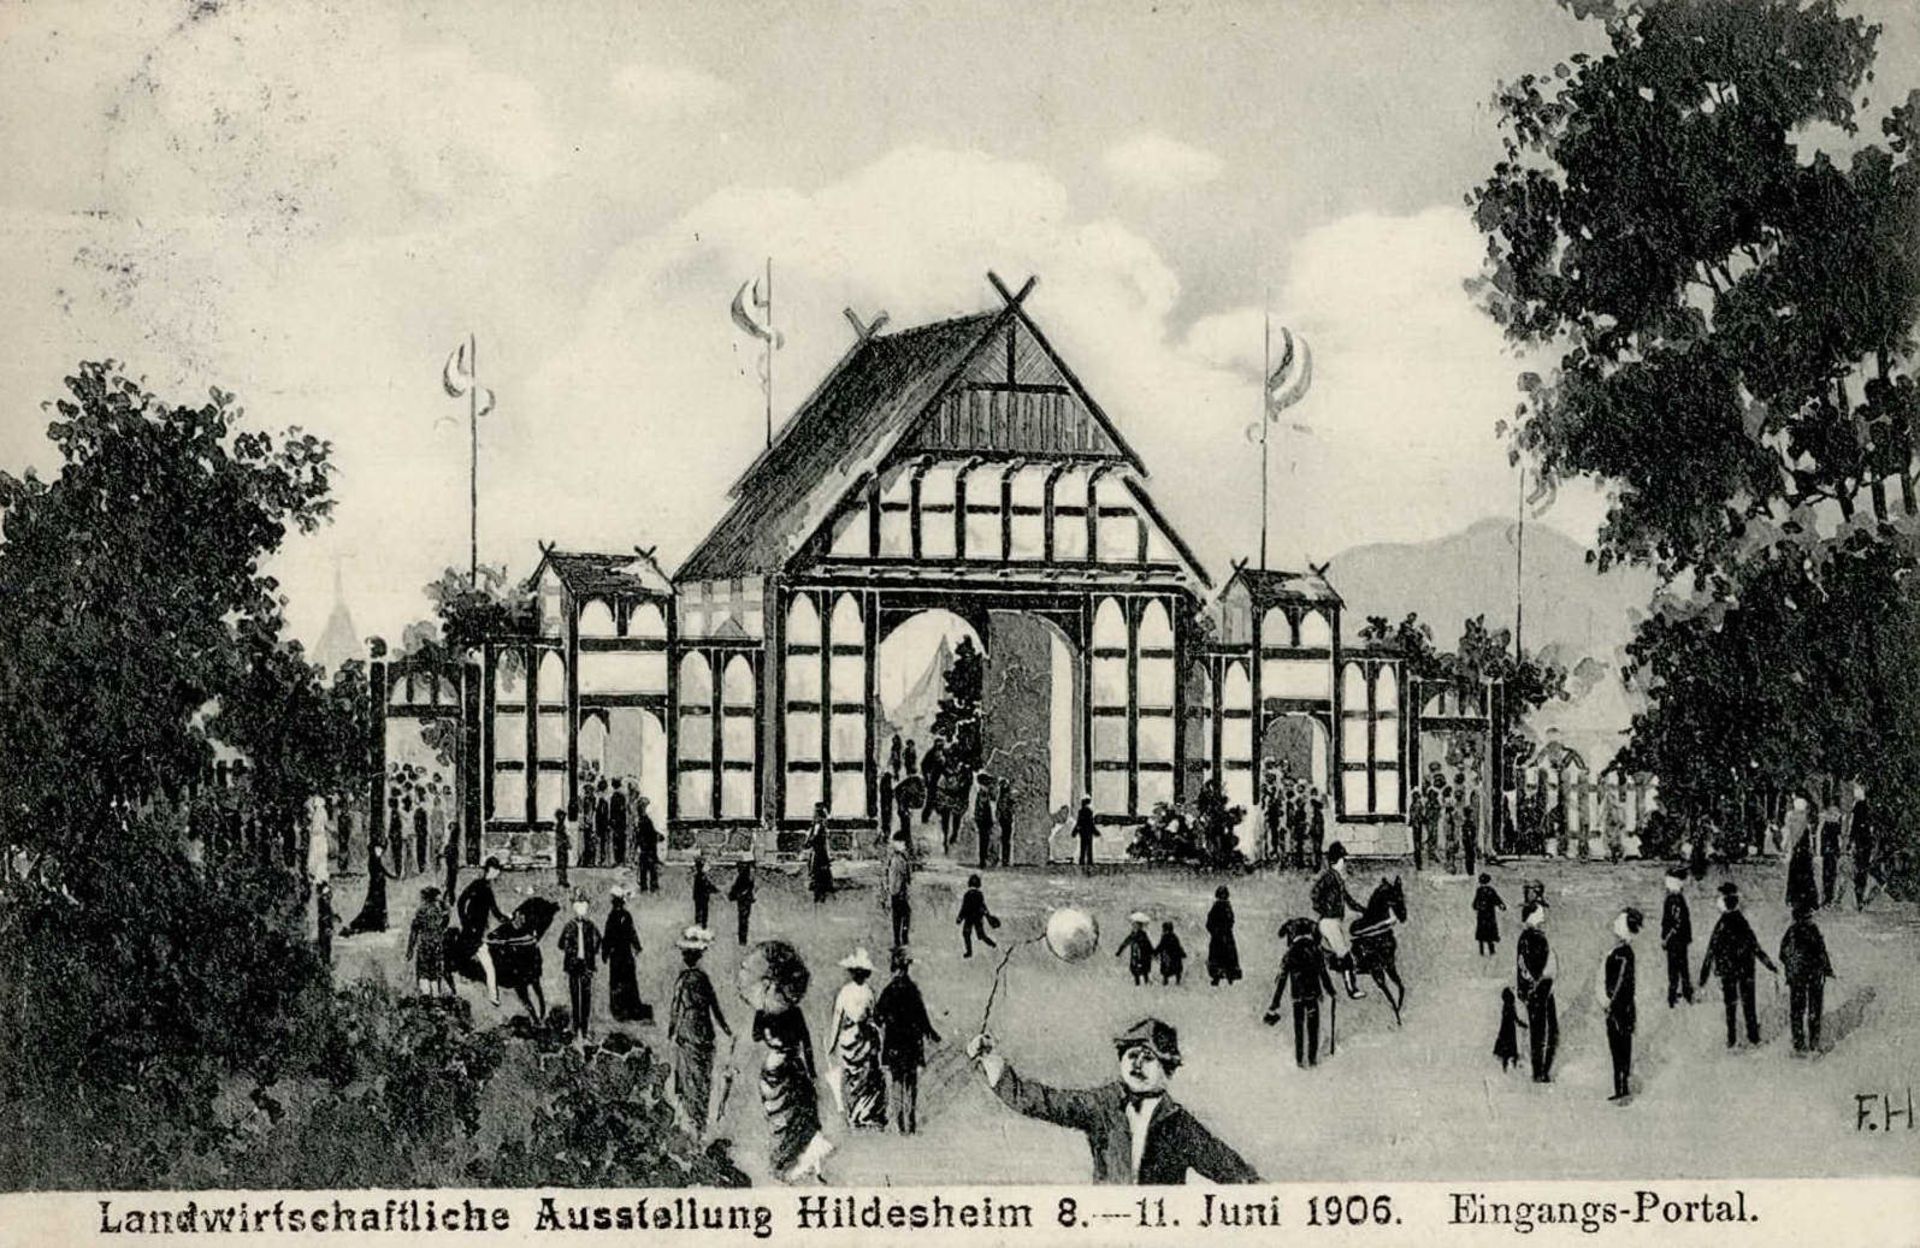 Landwirtschaft - LANDWIRTSCHAFTLICHE AUSSTELLUNG HILDESHEIM mit S-o vom 11.6.1906 Eingangsportal I